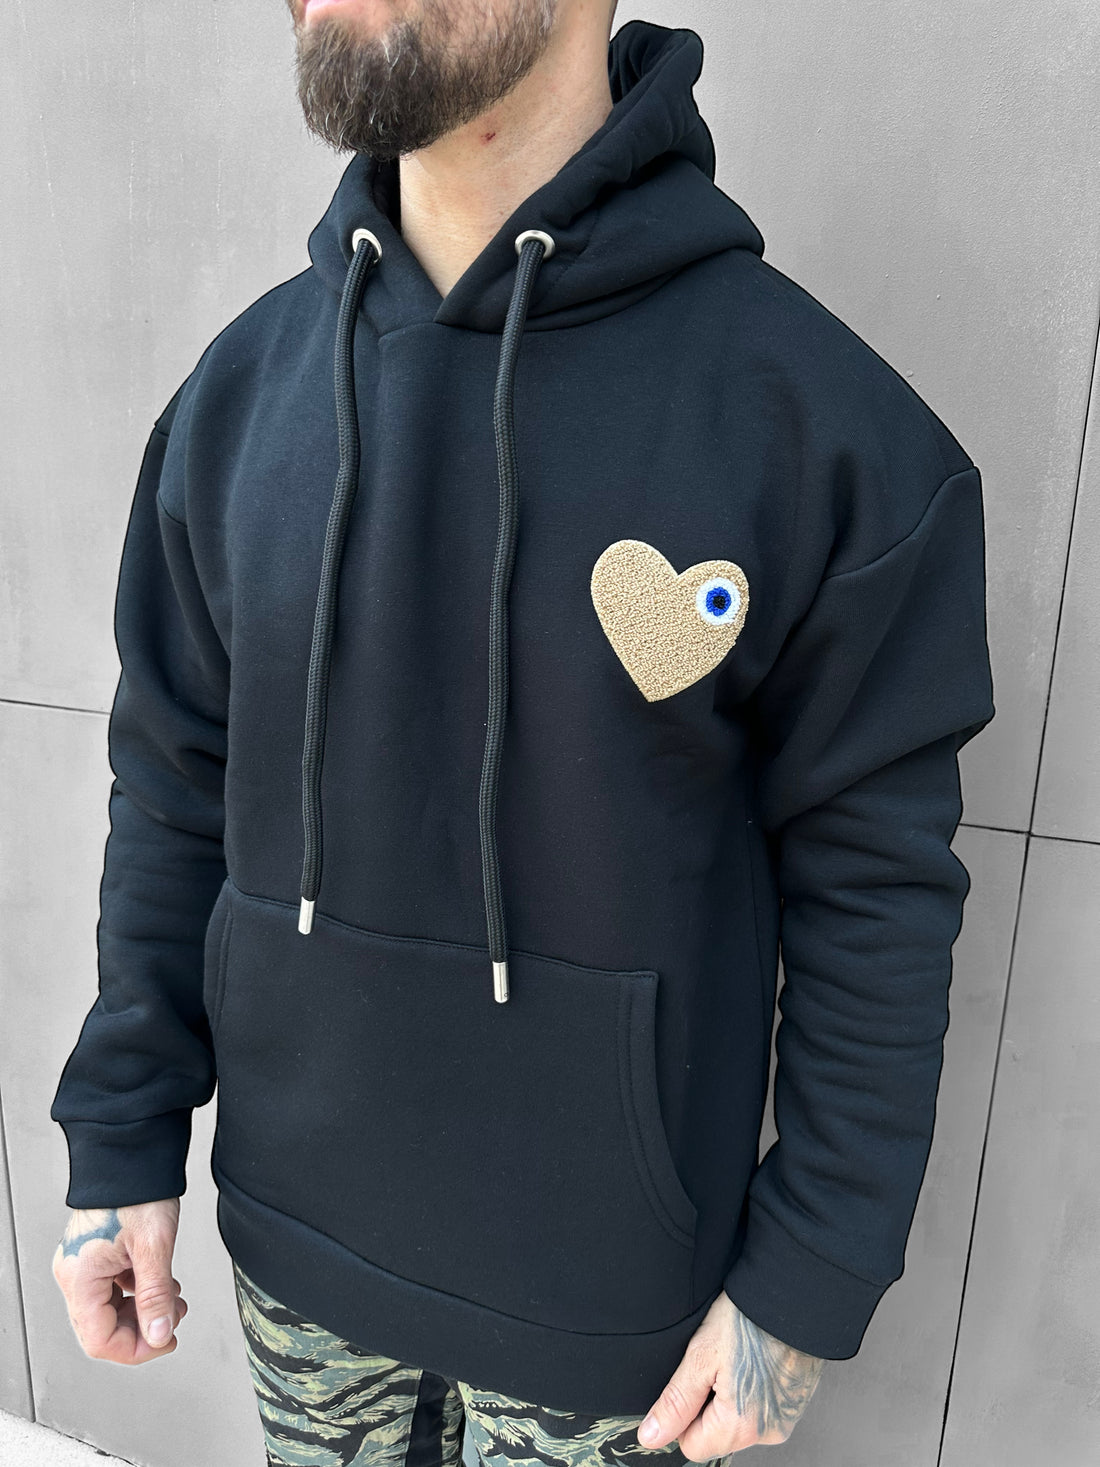 ADJ - Black hooded sweatshirt Beige Heart